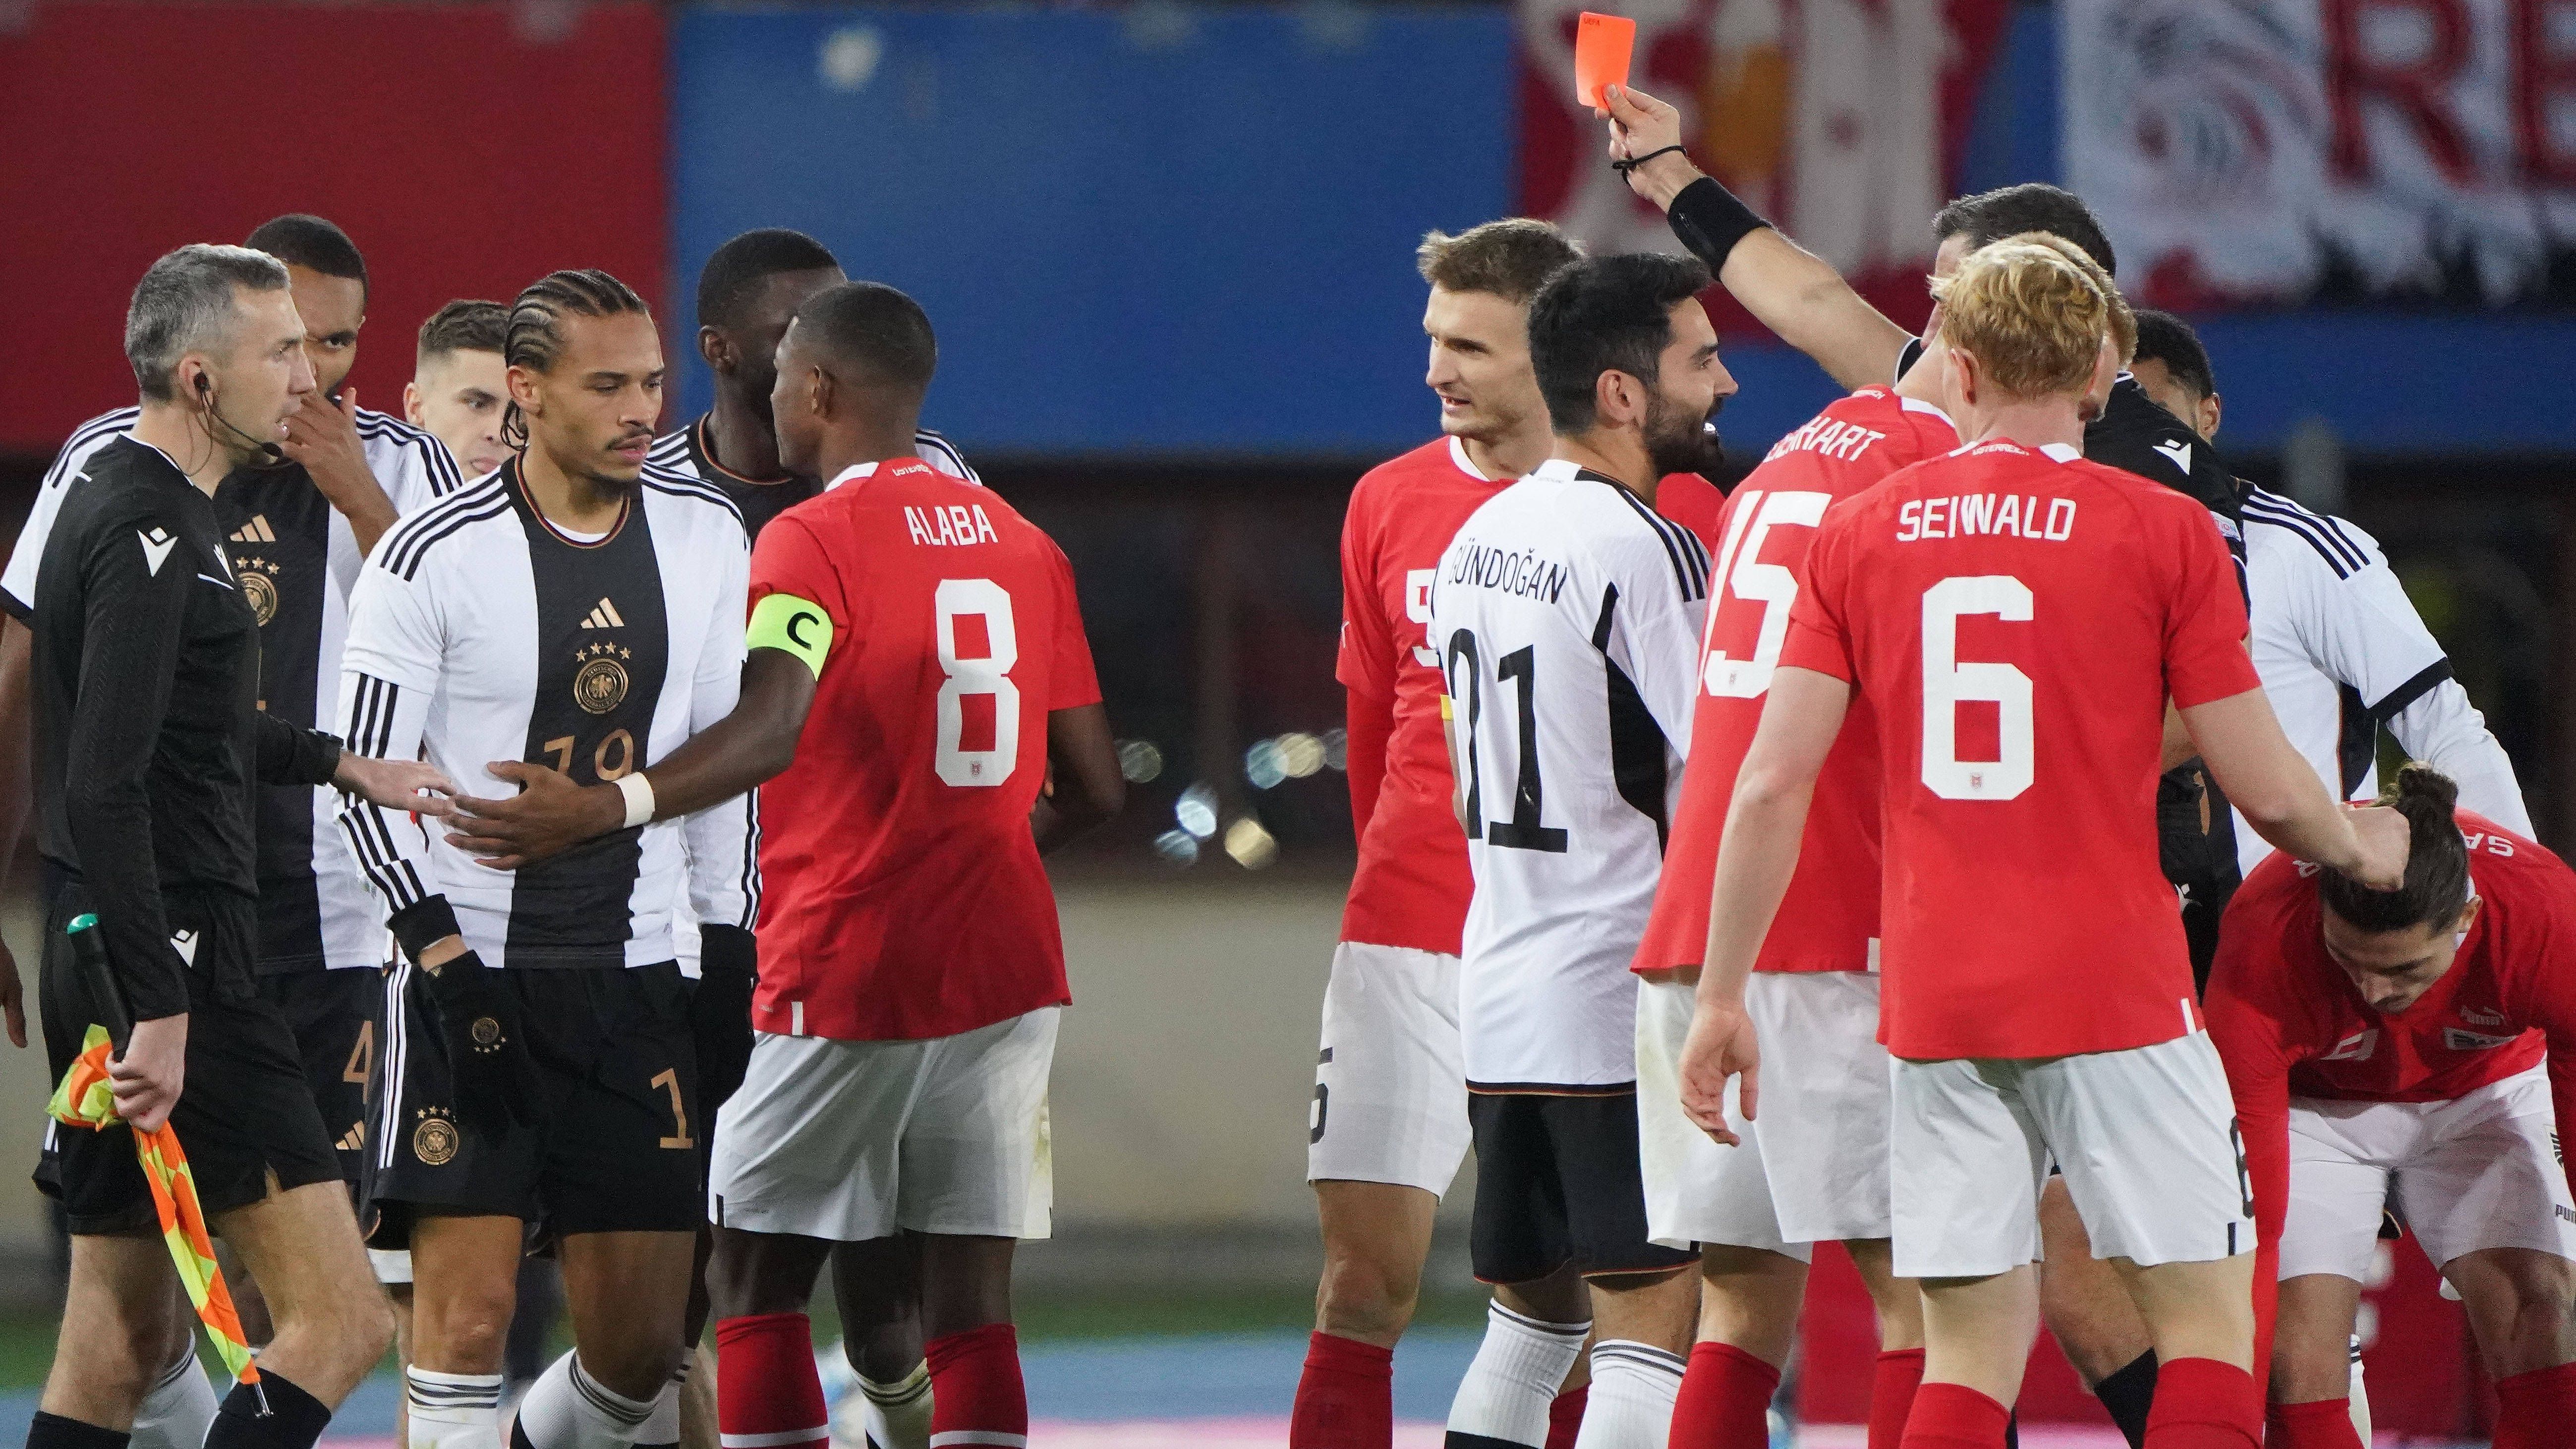 Platzverweis und die nächste schwache Leistung – das DFB-Team enttäuscht auch gegen Österreich und verliert mit 0:2. Die Noten und Einzelkritiken der Mannschaft von Julian Nagelsmann.